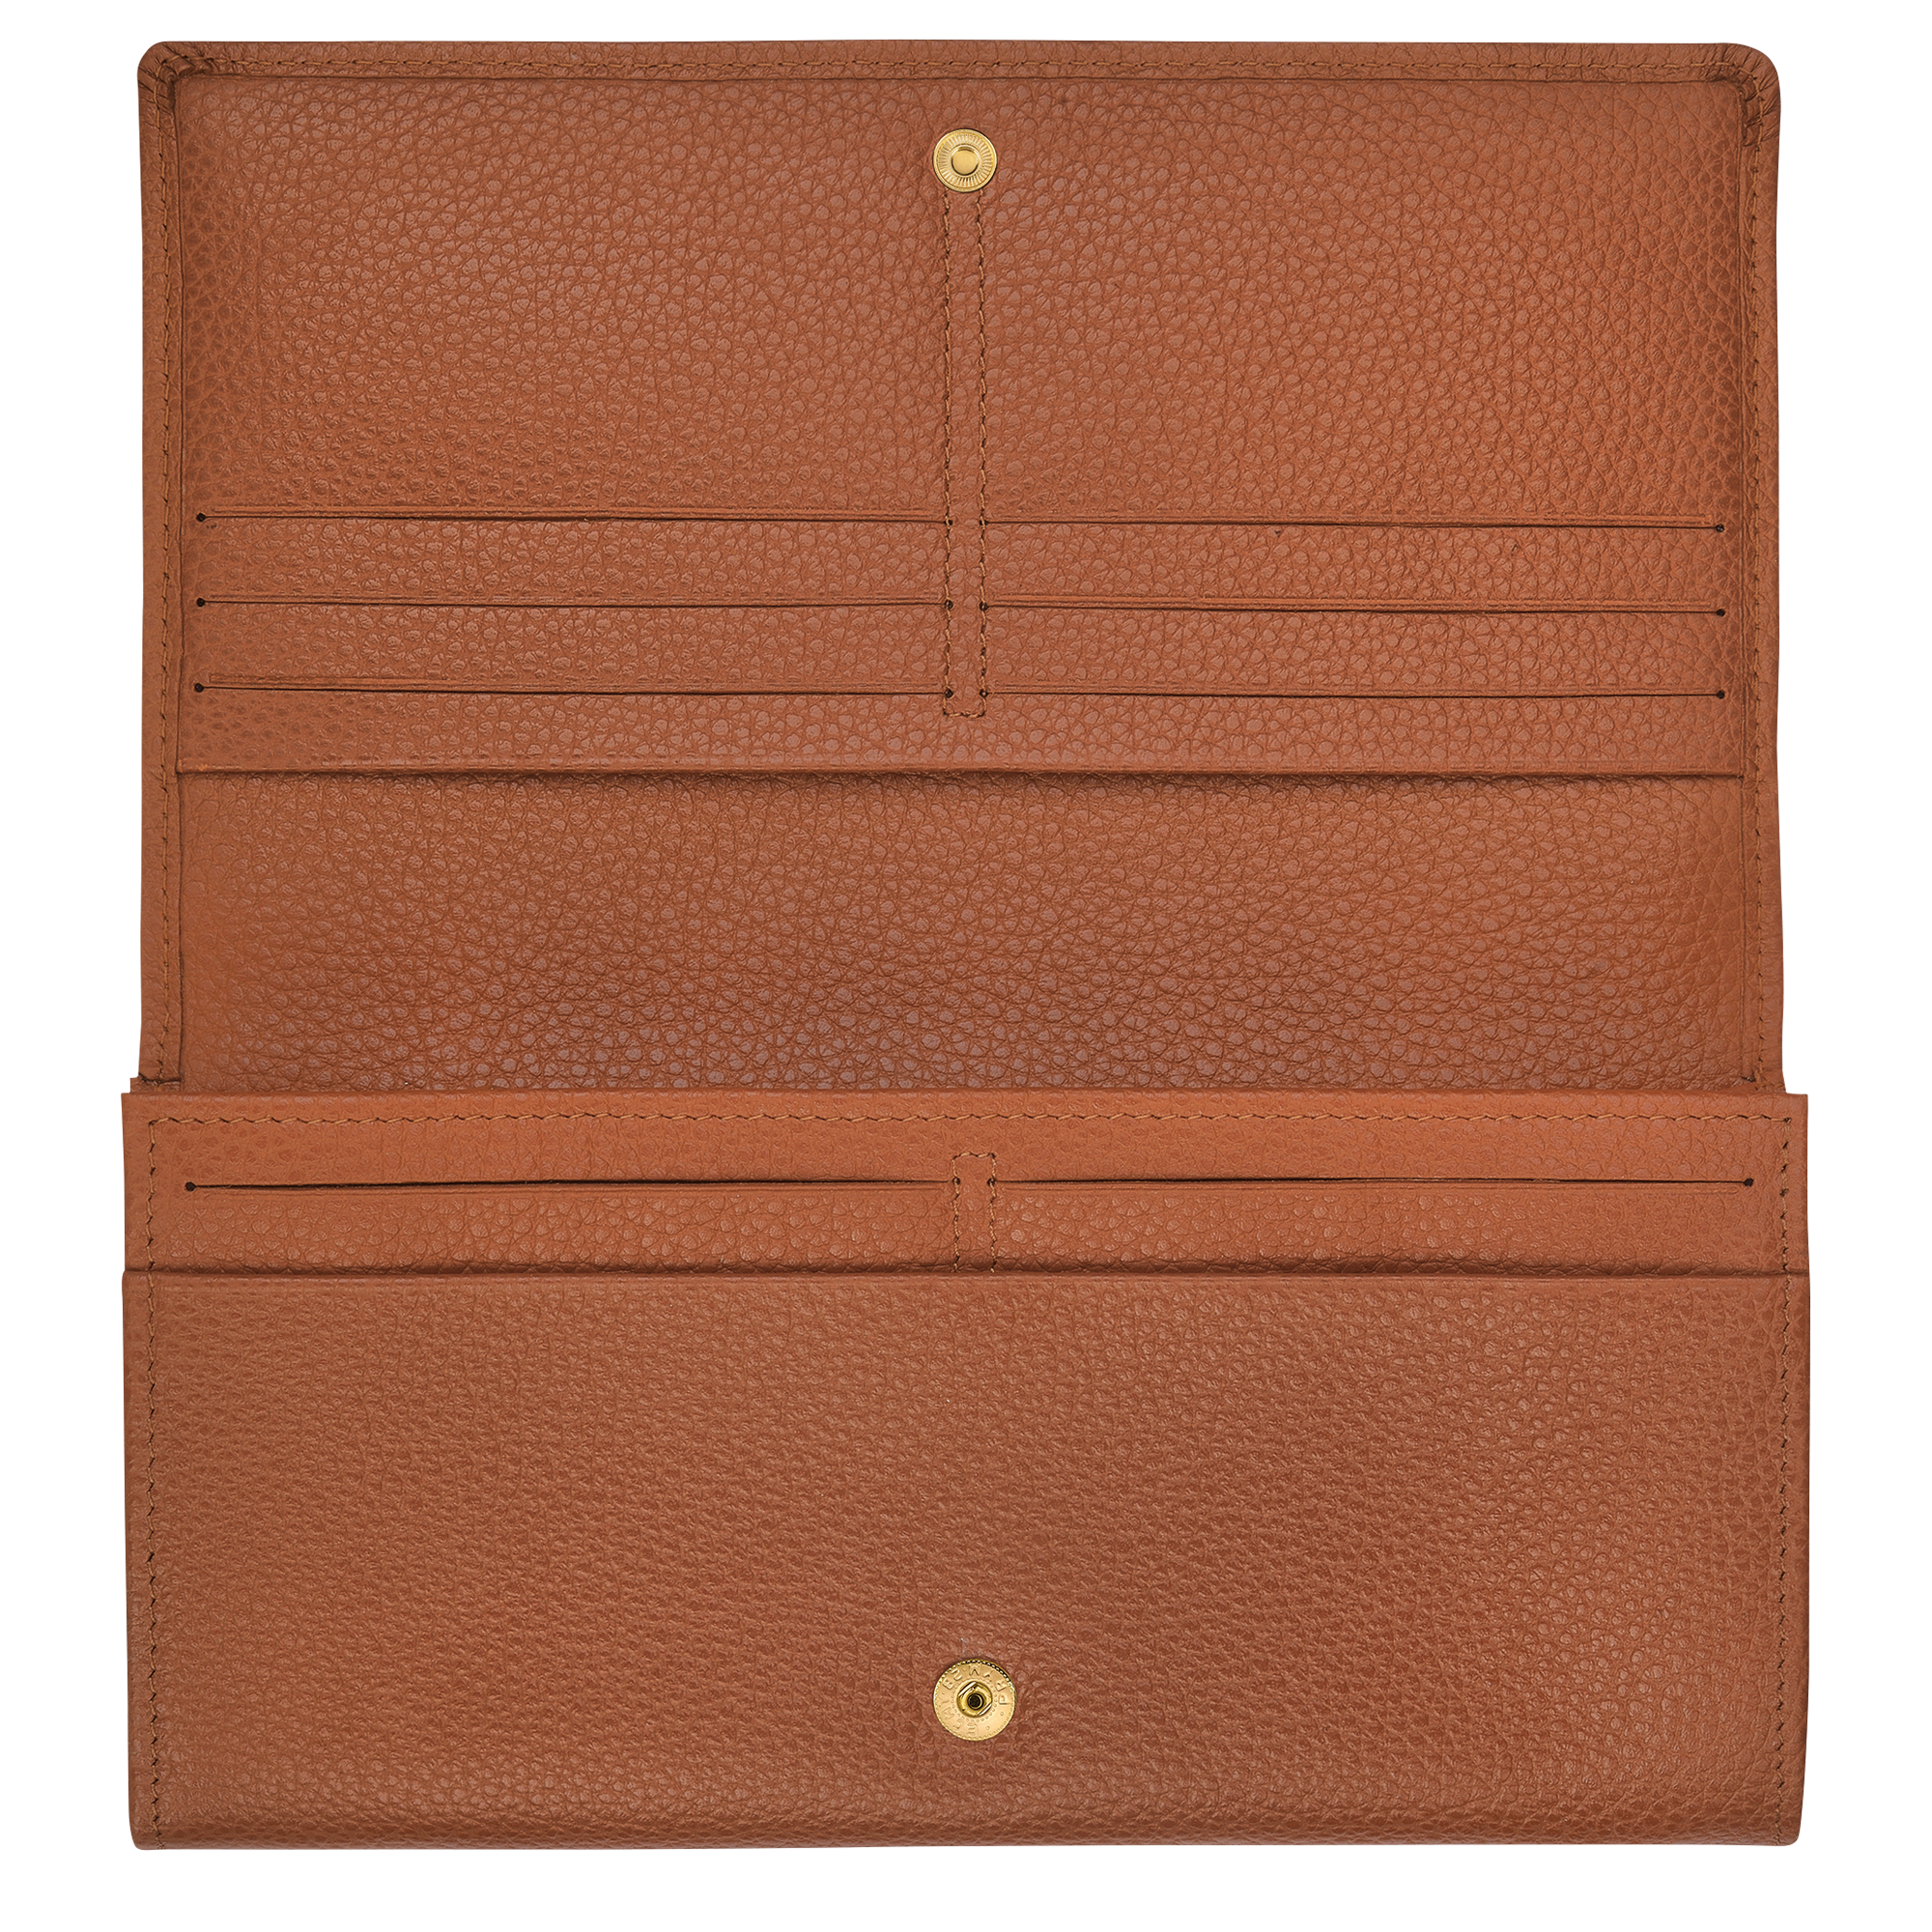 LONGCHAMP Le Foulonné Leather Continental Wallet